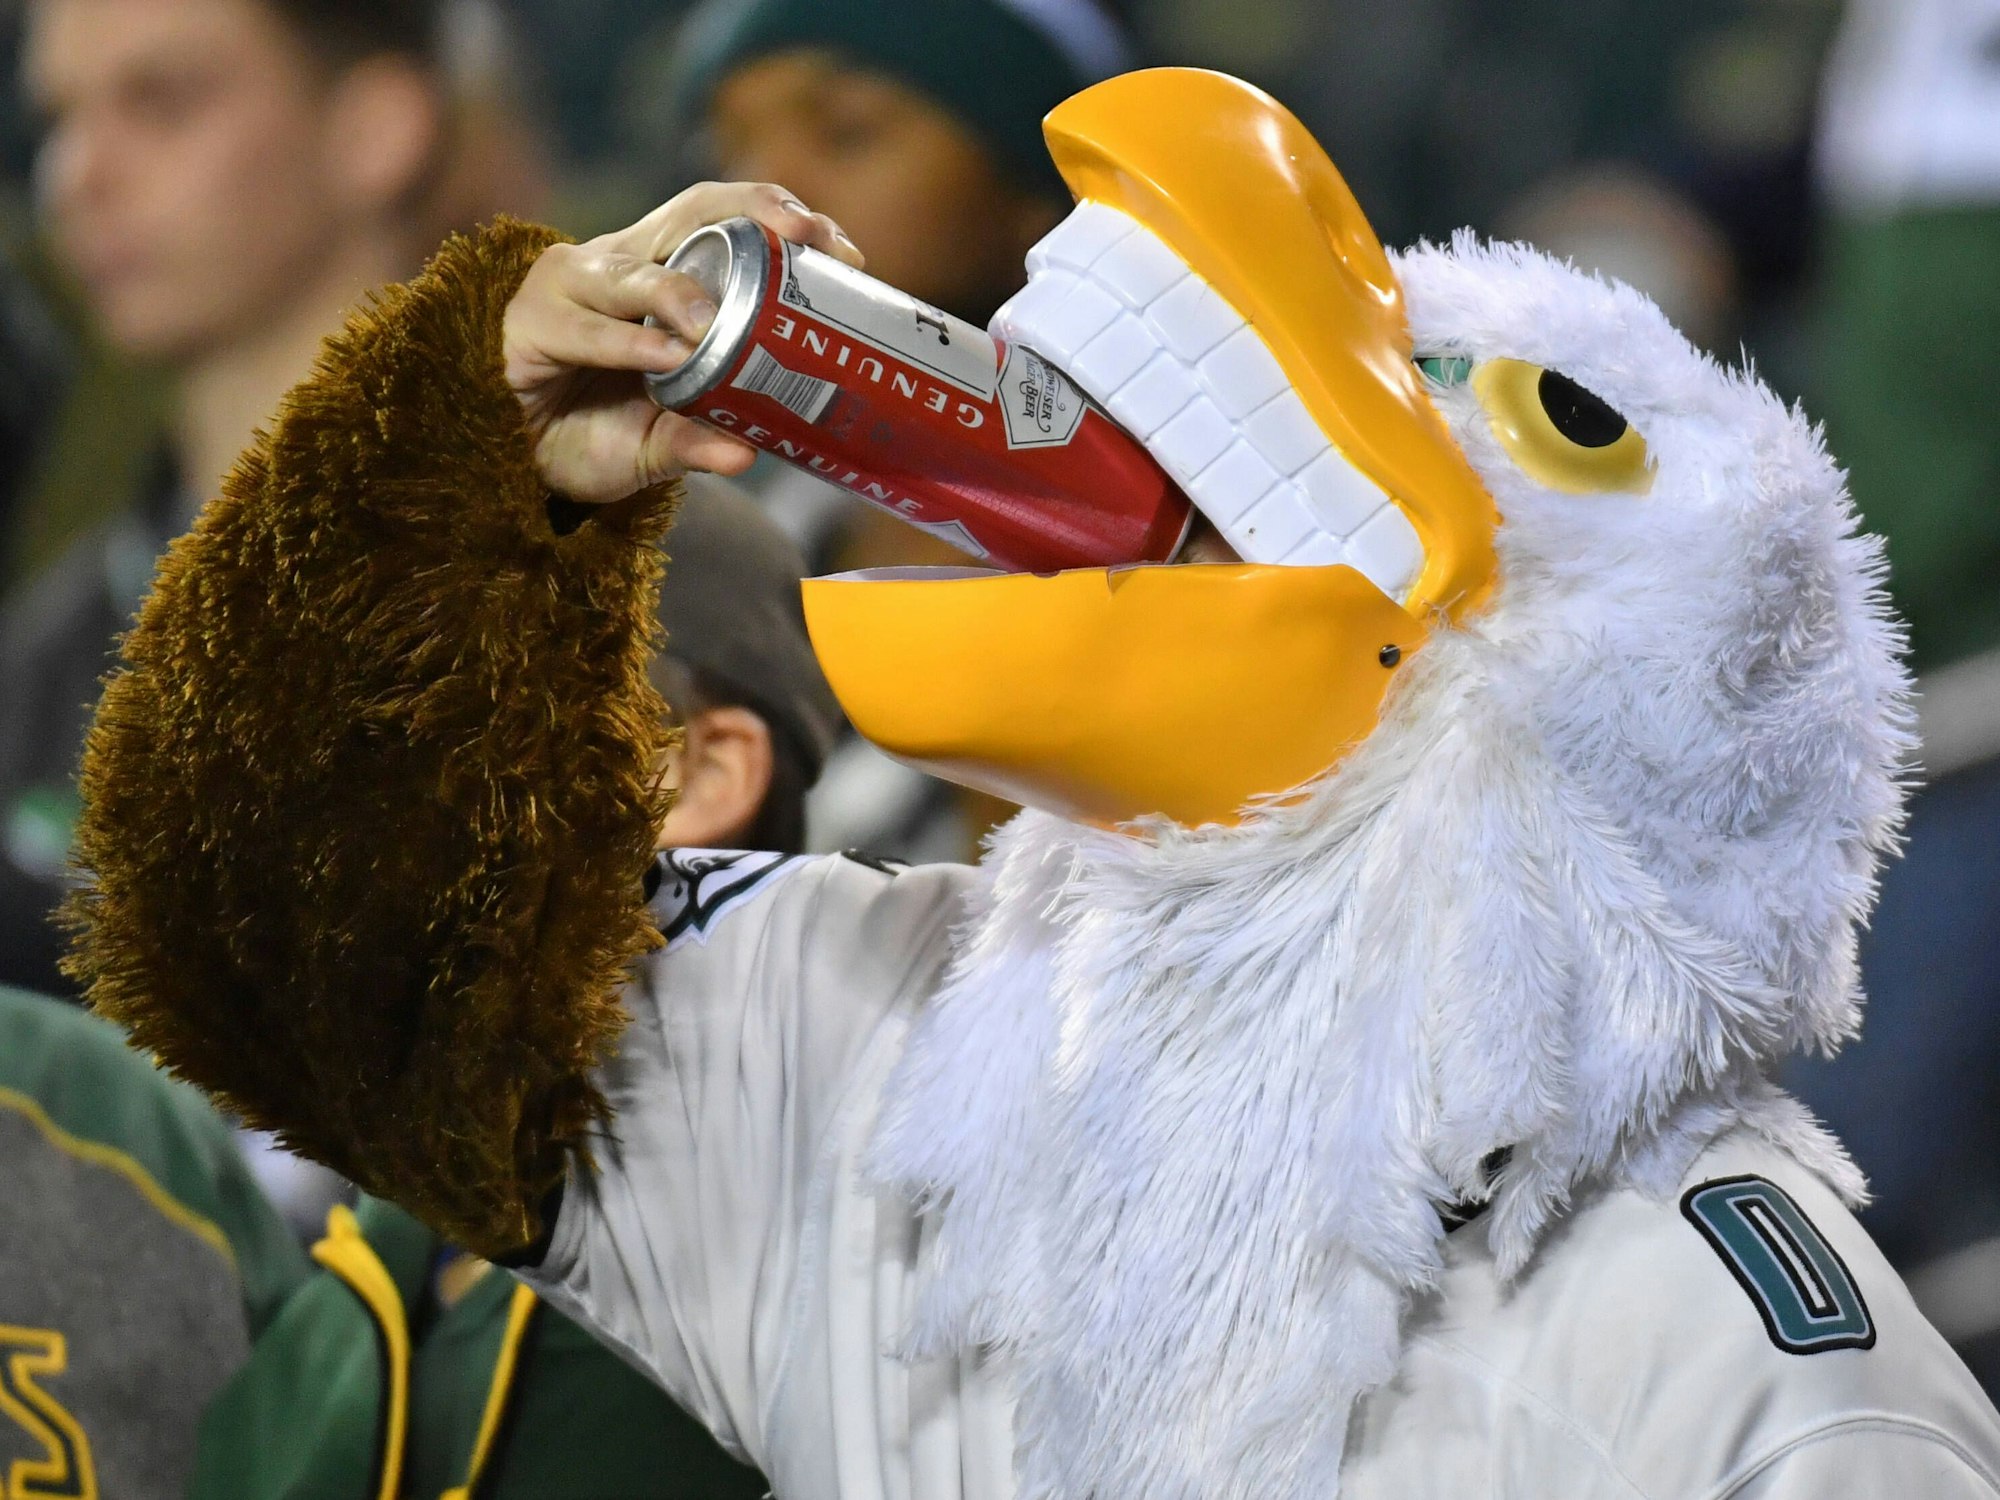 Ein NFL-Fan im Adler-Kostüm trinkt Bier aus der Dose.